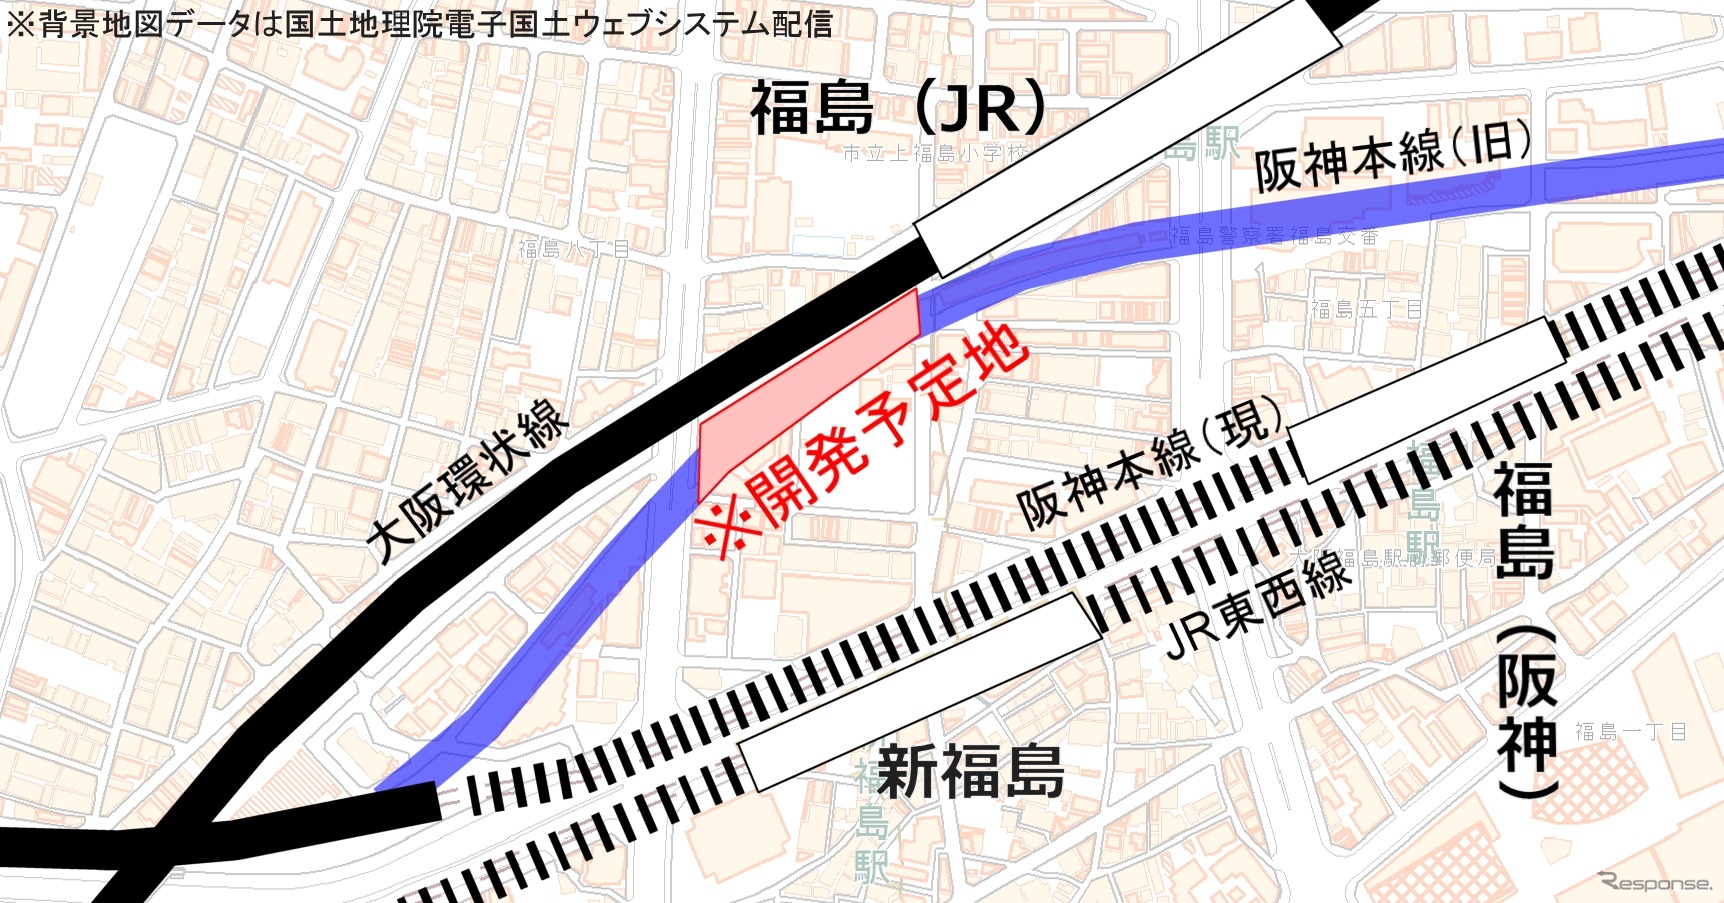 複合ビルの開発予定地。土地の大半は阪神本線の地上線跡地になる。